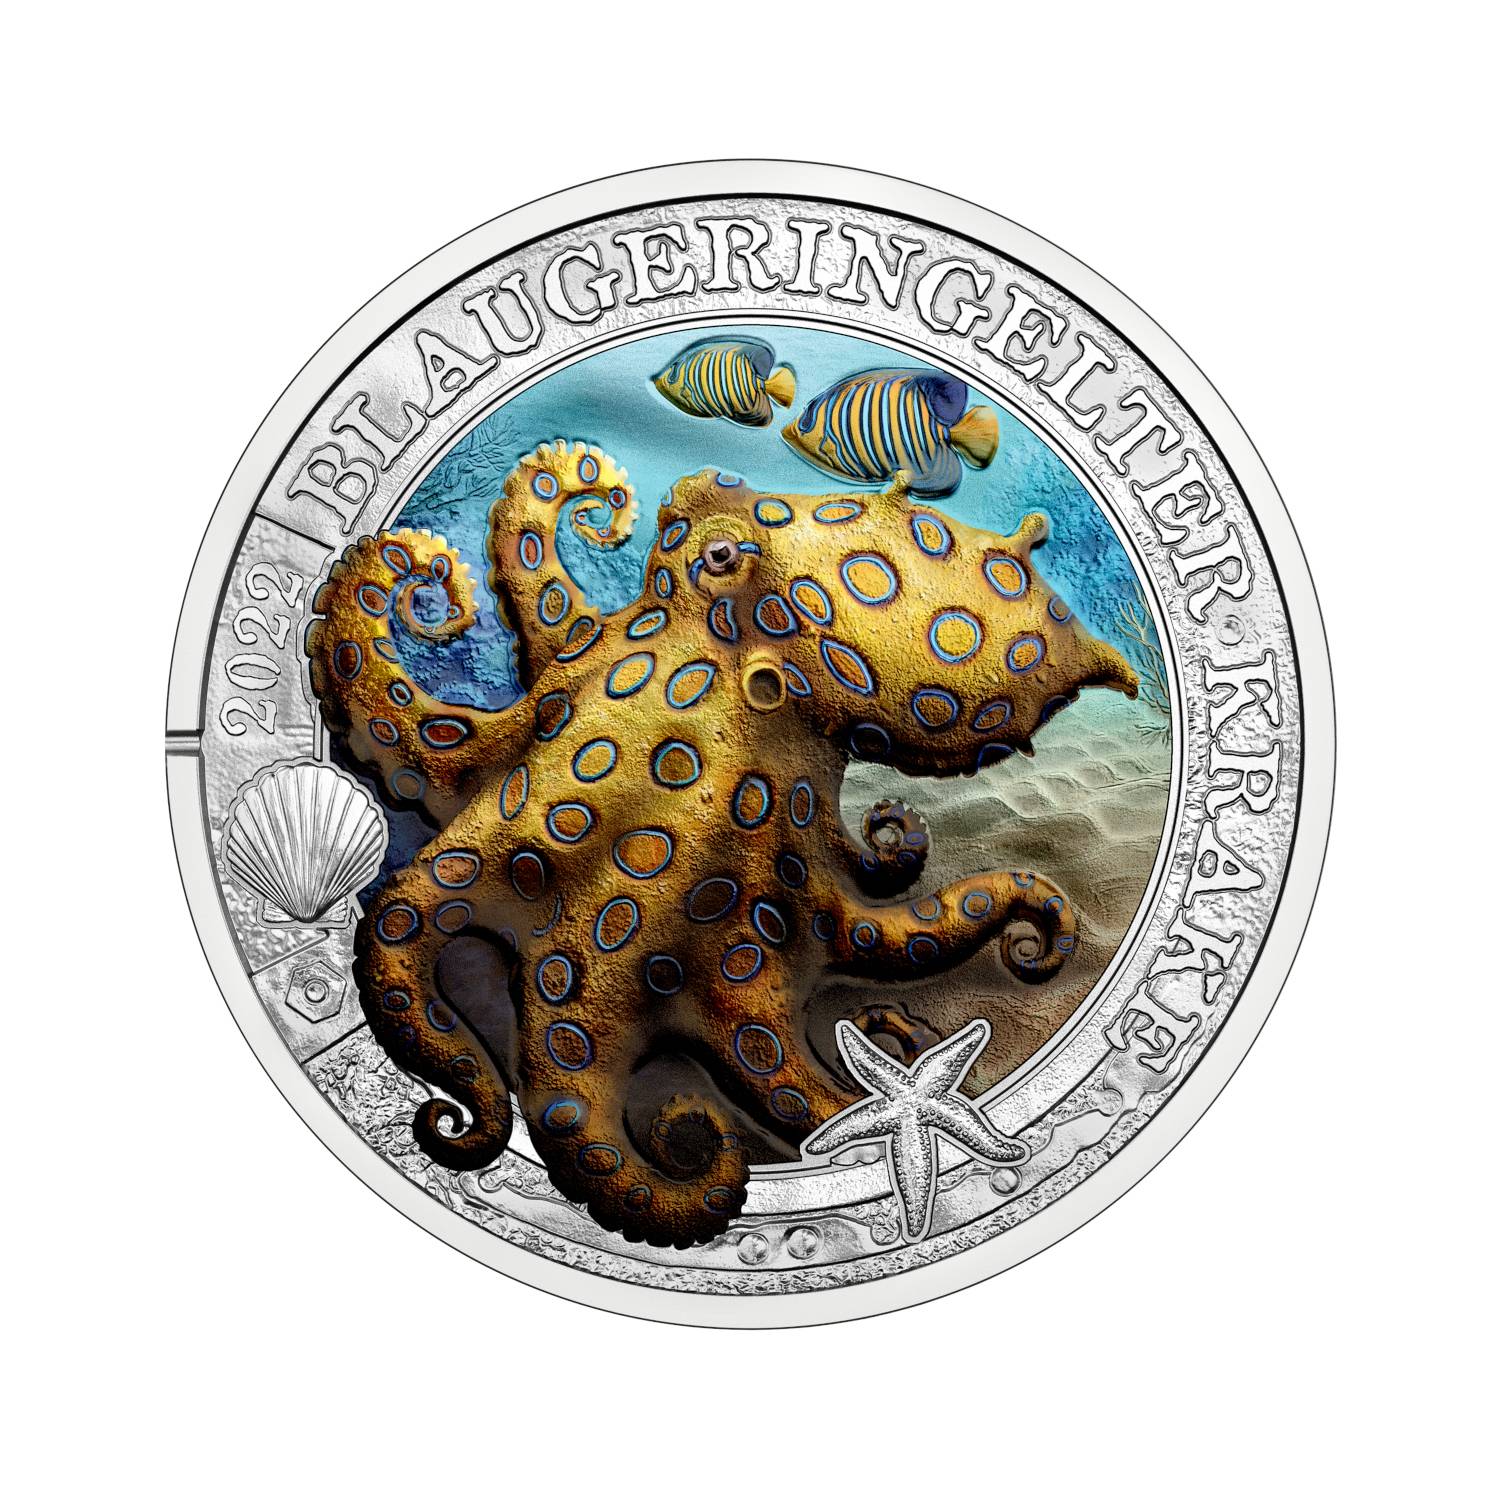 Meereswelten Münzen